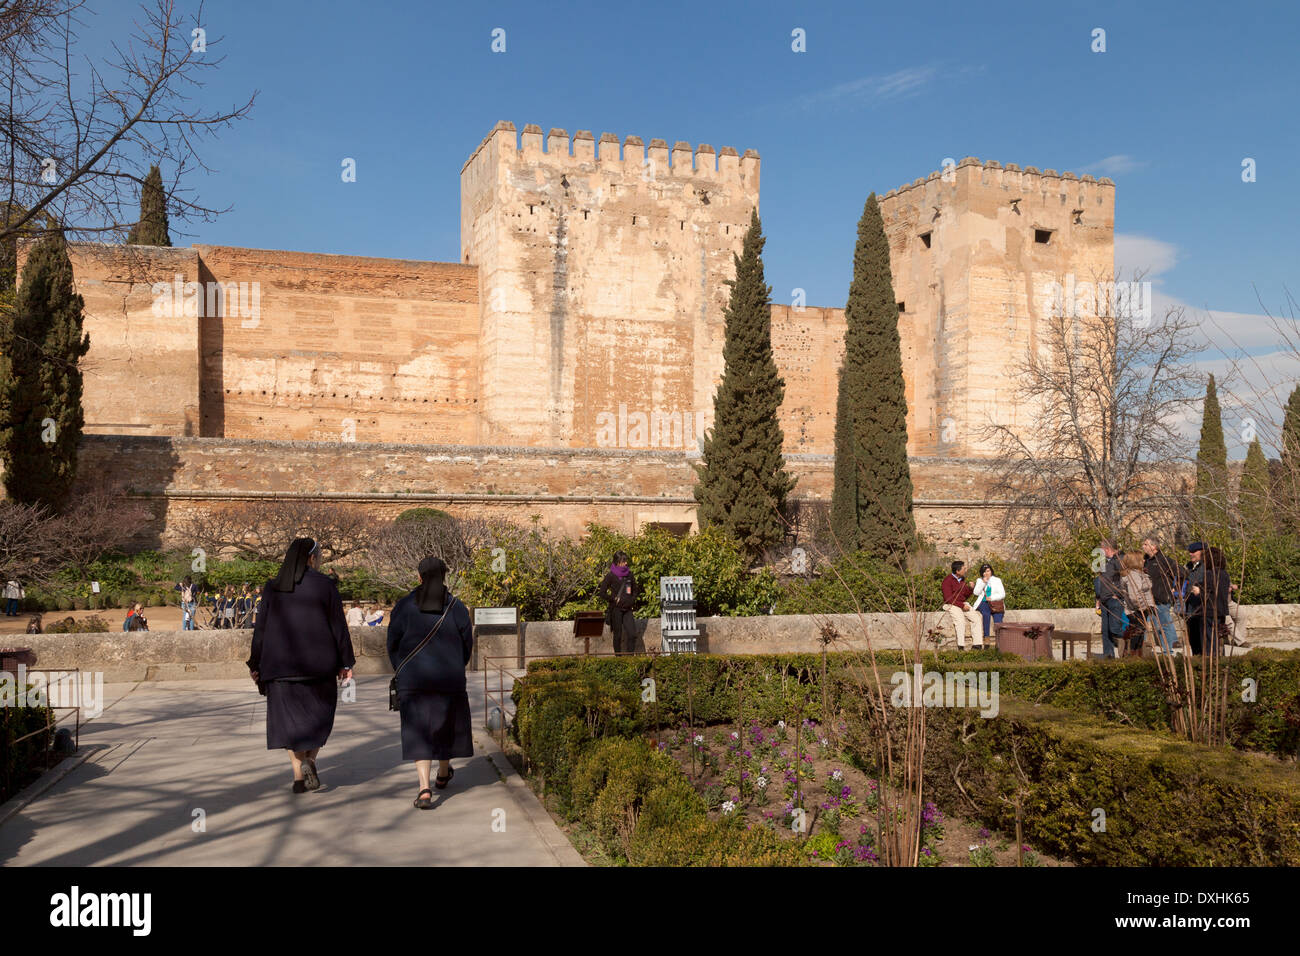 L'Alcazaba, Palais de l'Alhambra, Grenade, Andalousie, Espagne, Europe Banque D'Images